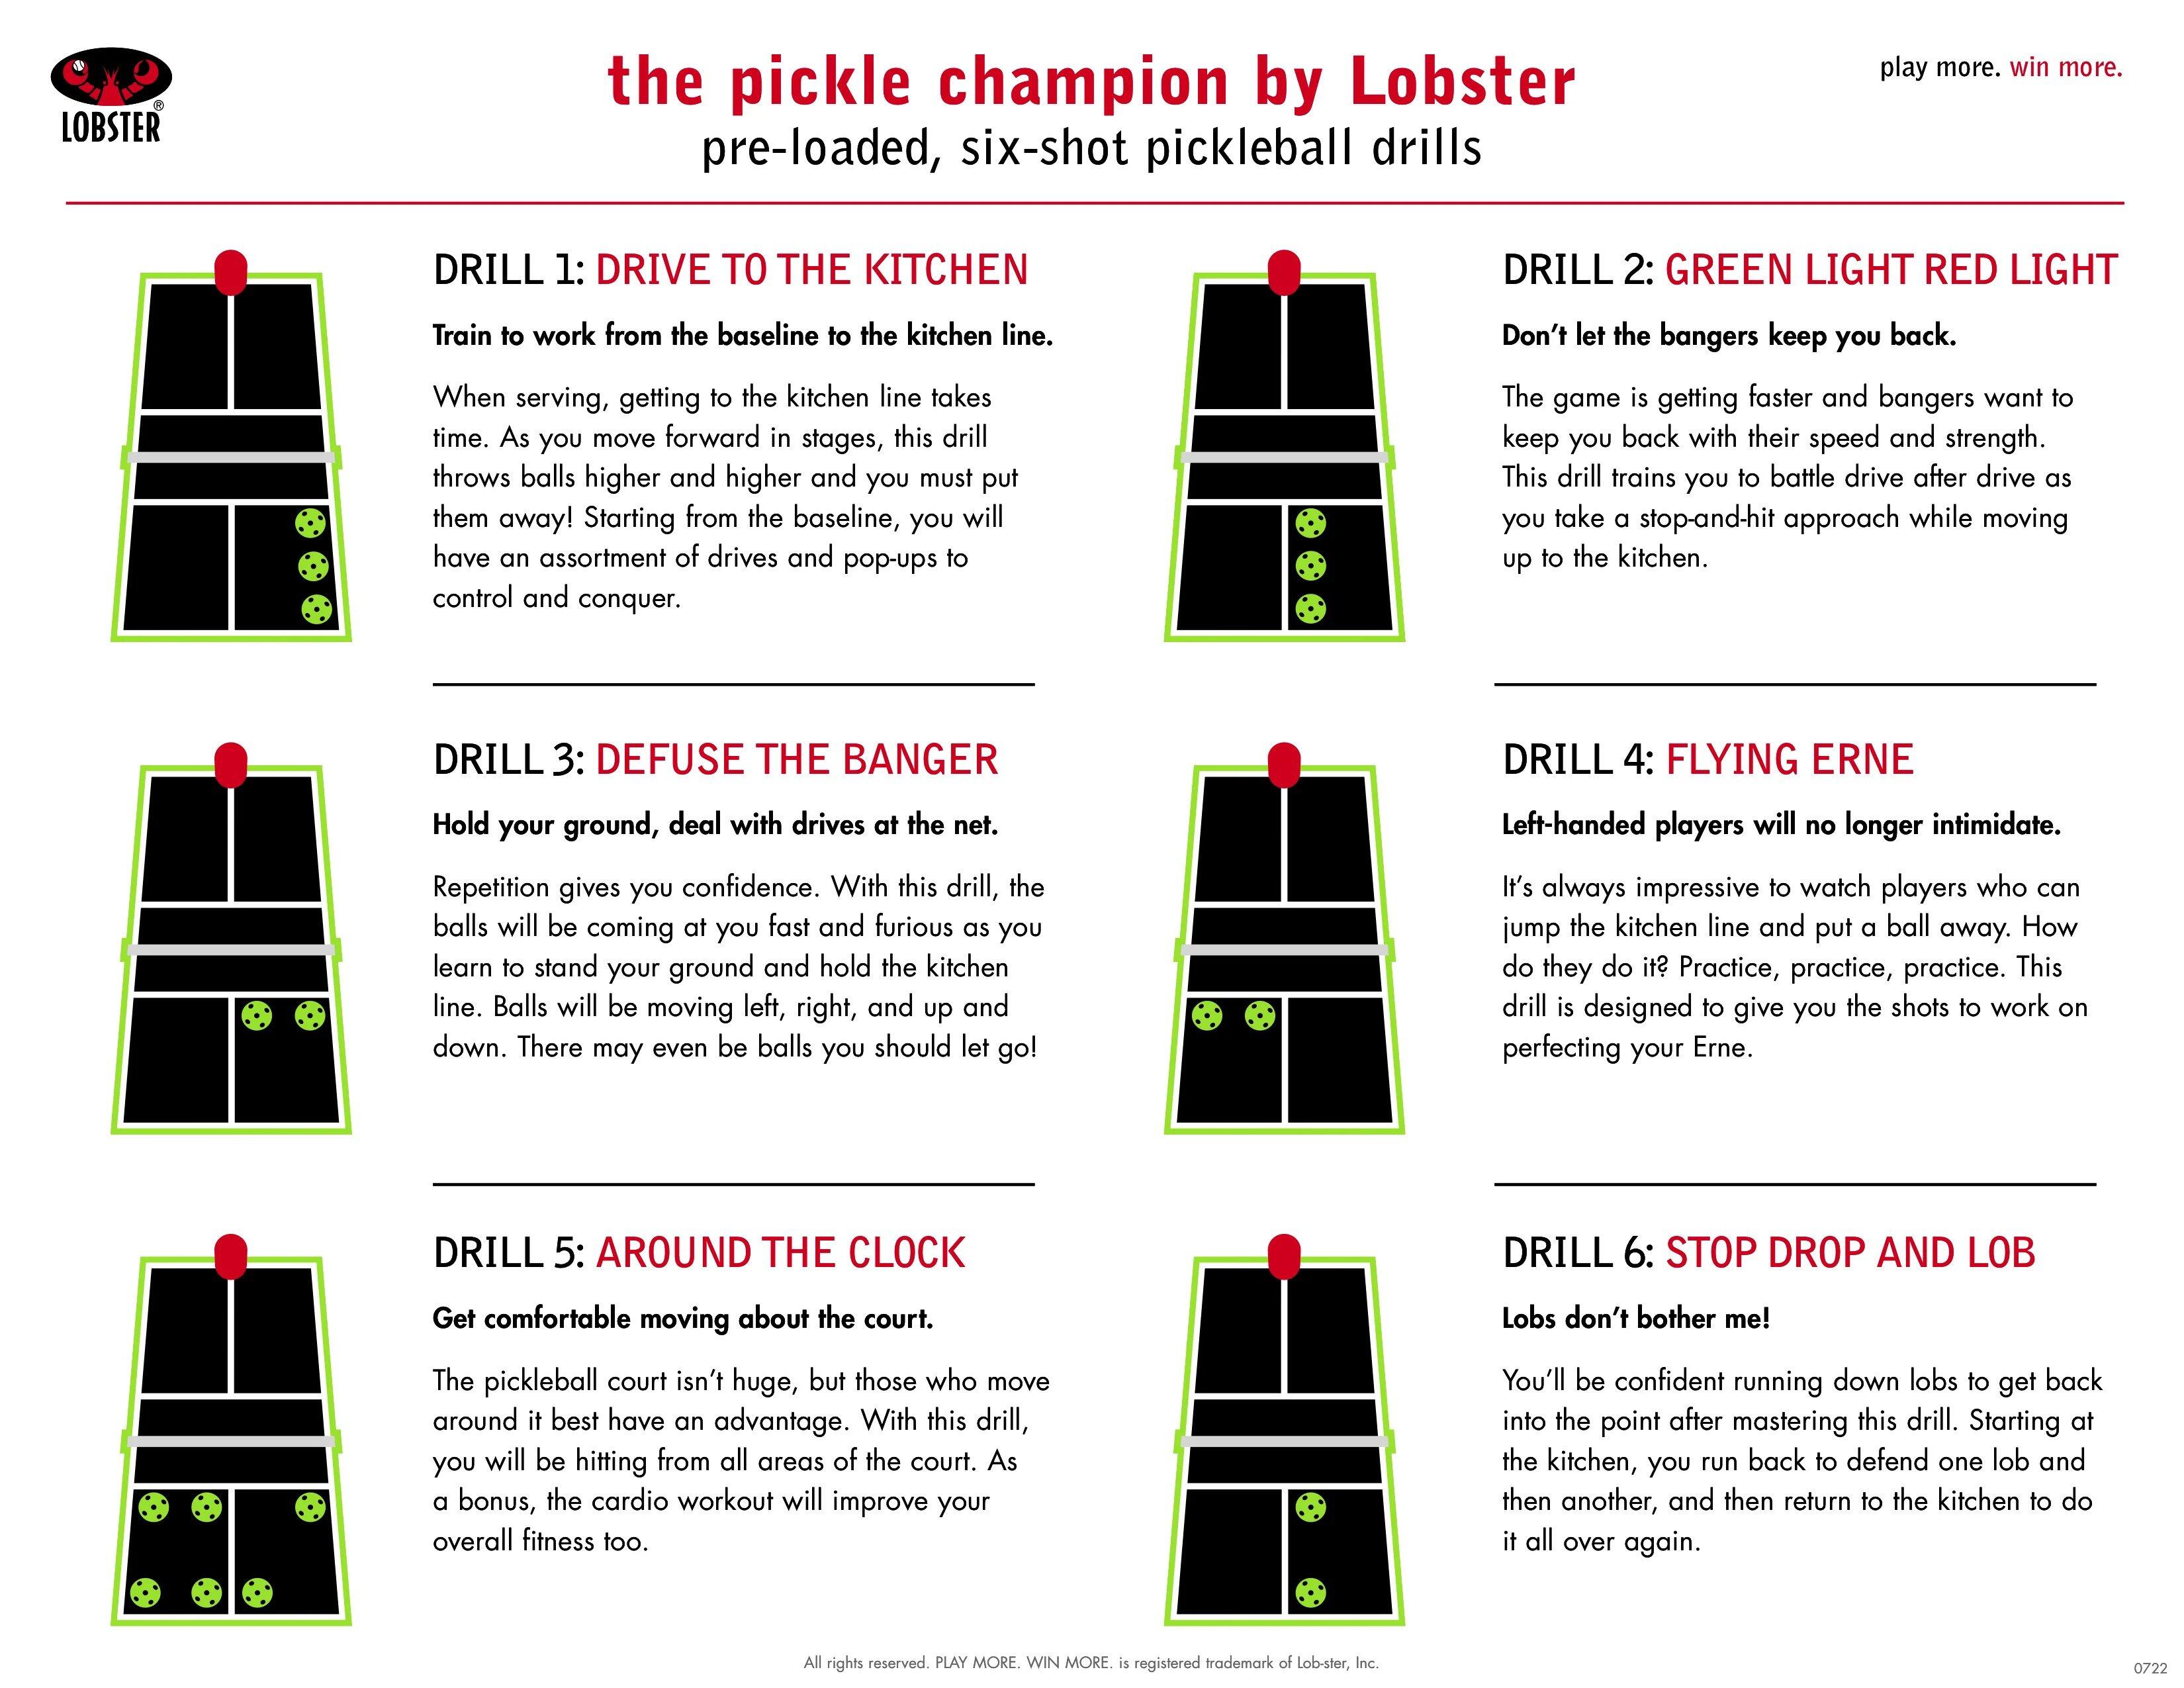 Lobster Pickle Champion ball machine drills details